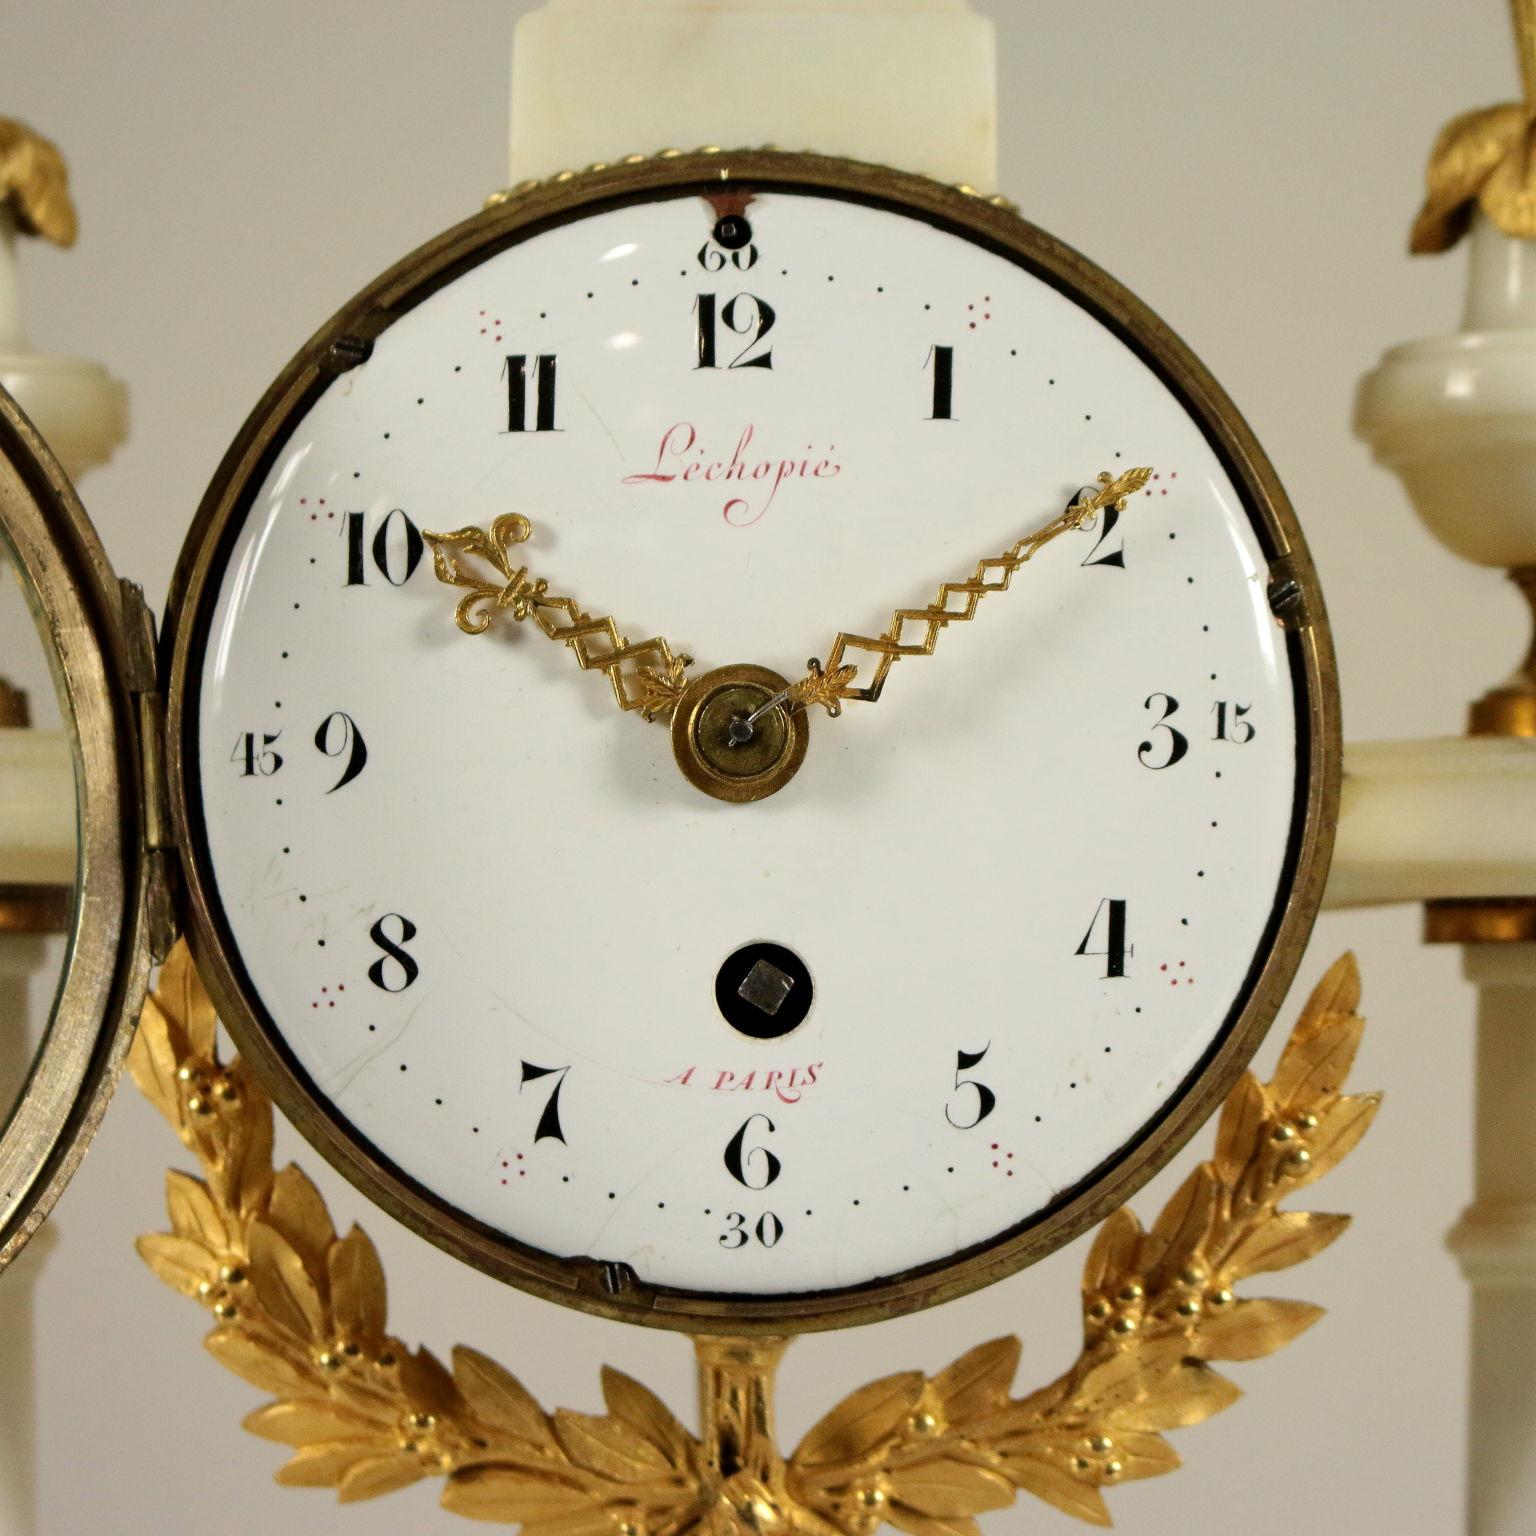 Doré Horloge de table Lèchopiè à Paris Marbre Bronze doré, France, années 1700